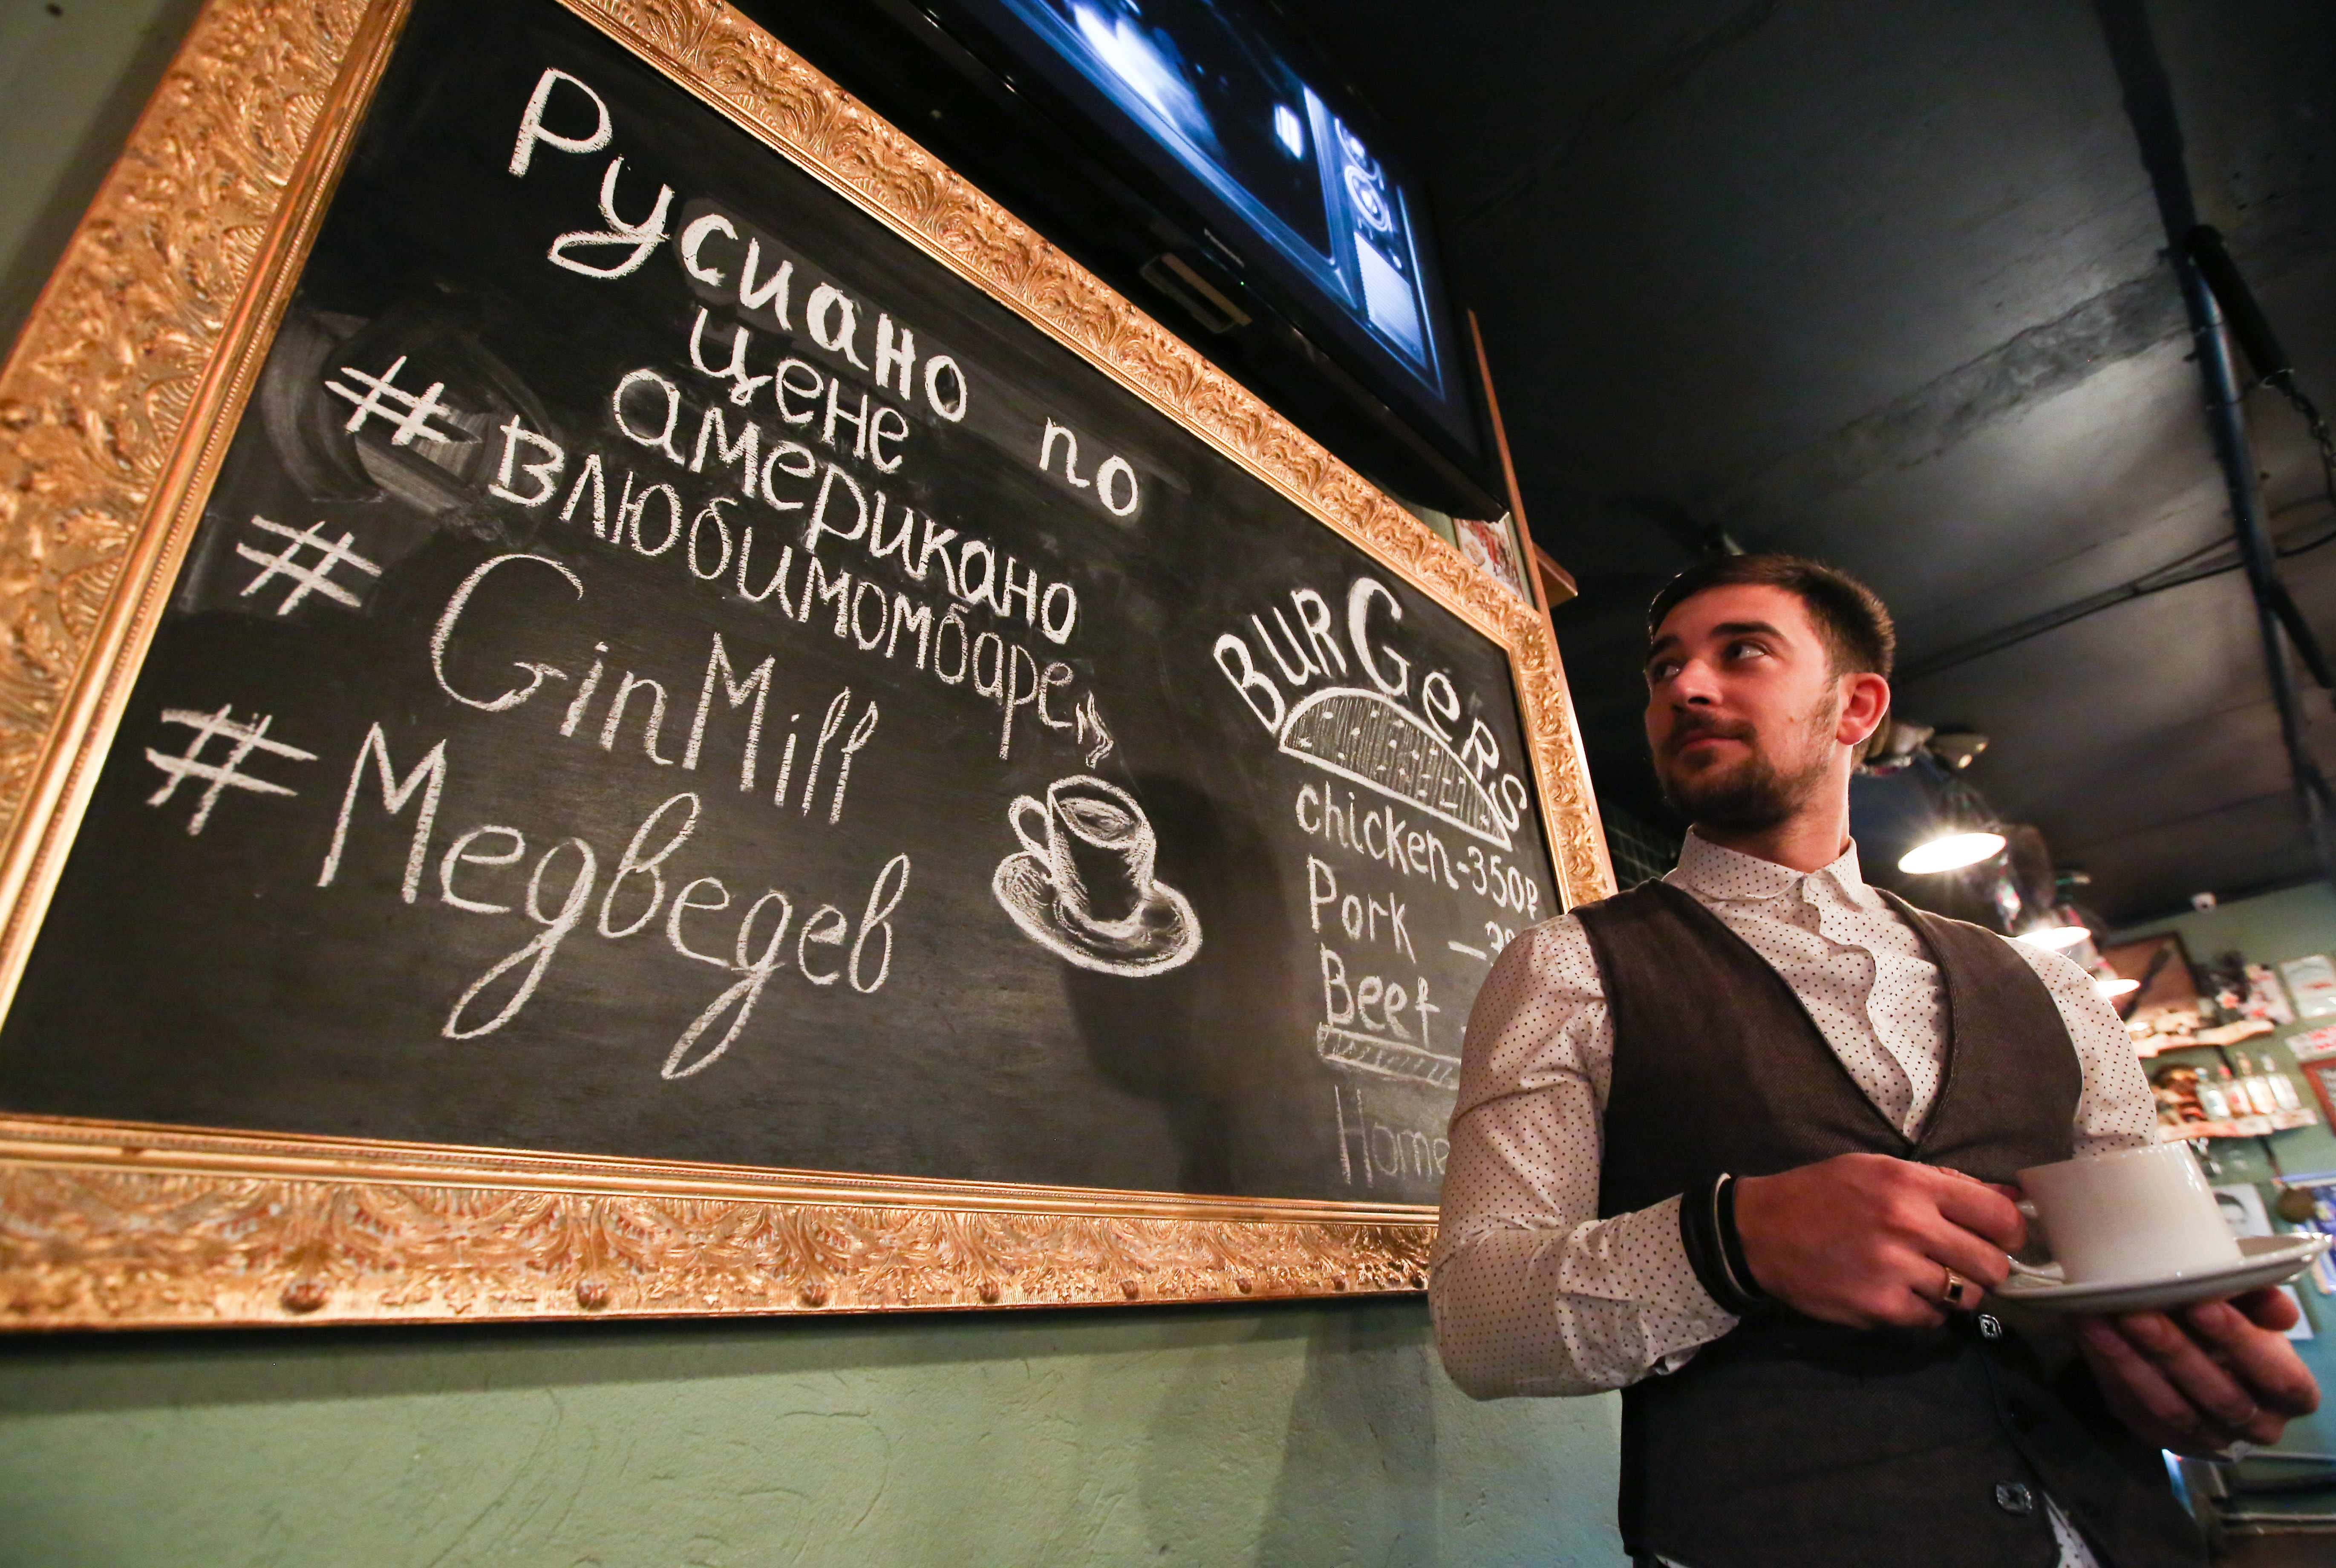 Ryazan's Gin Mill 29 bar offers "Rusiano" coffee. 